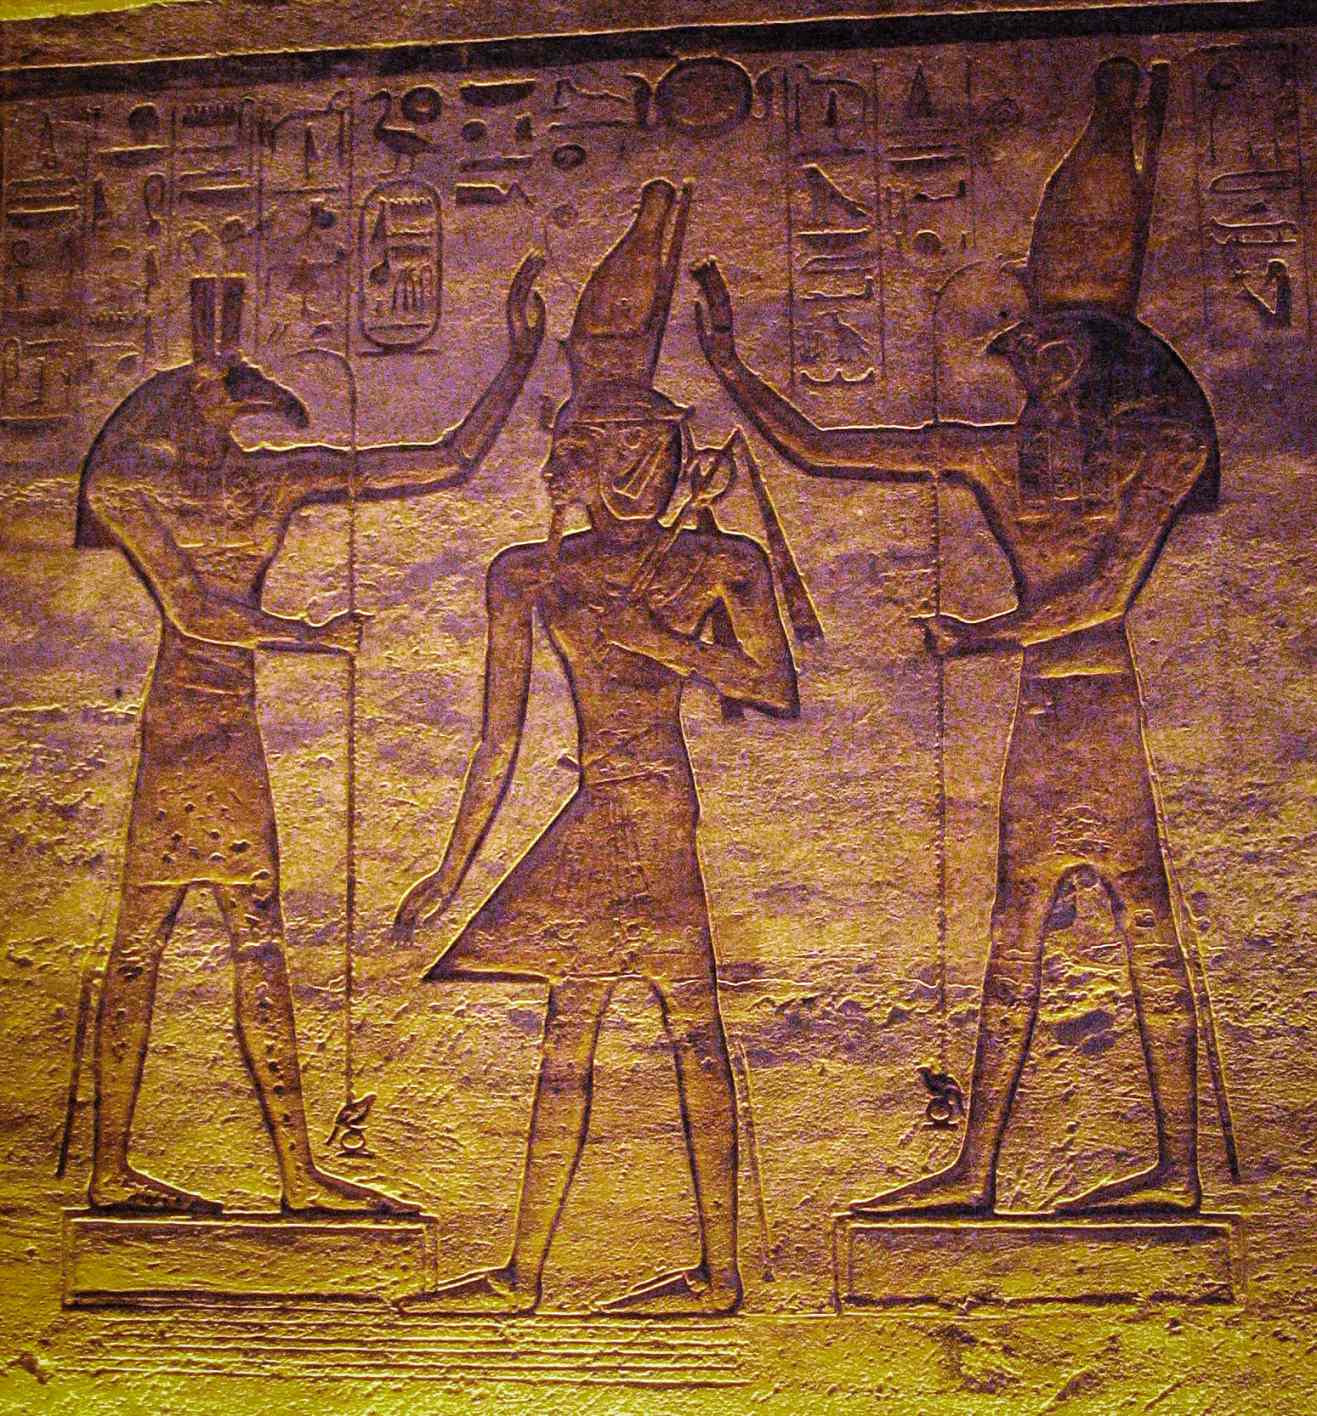 Set (Seth) in Horus obožujeta Ramzesa. Trenutna študija kaže, da je luno morda predstavljal Seth, spremenljivo zvezdo Algol pa Horus v kairskem koledarju.